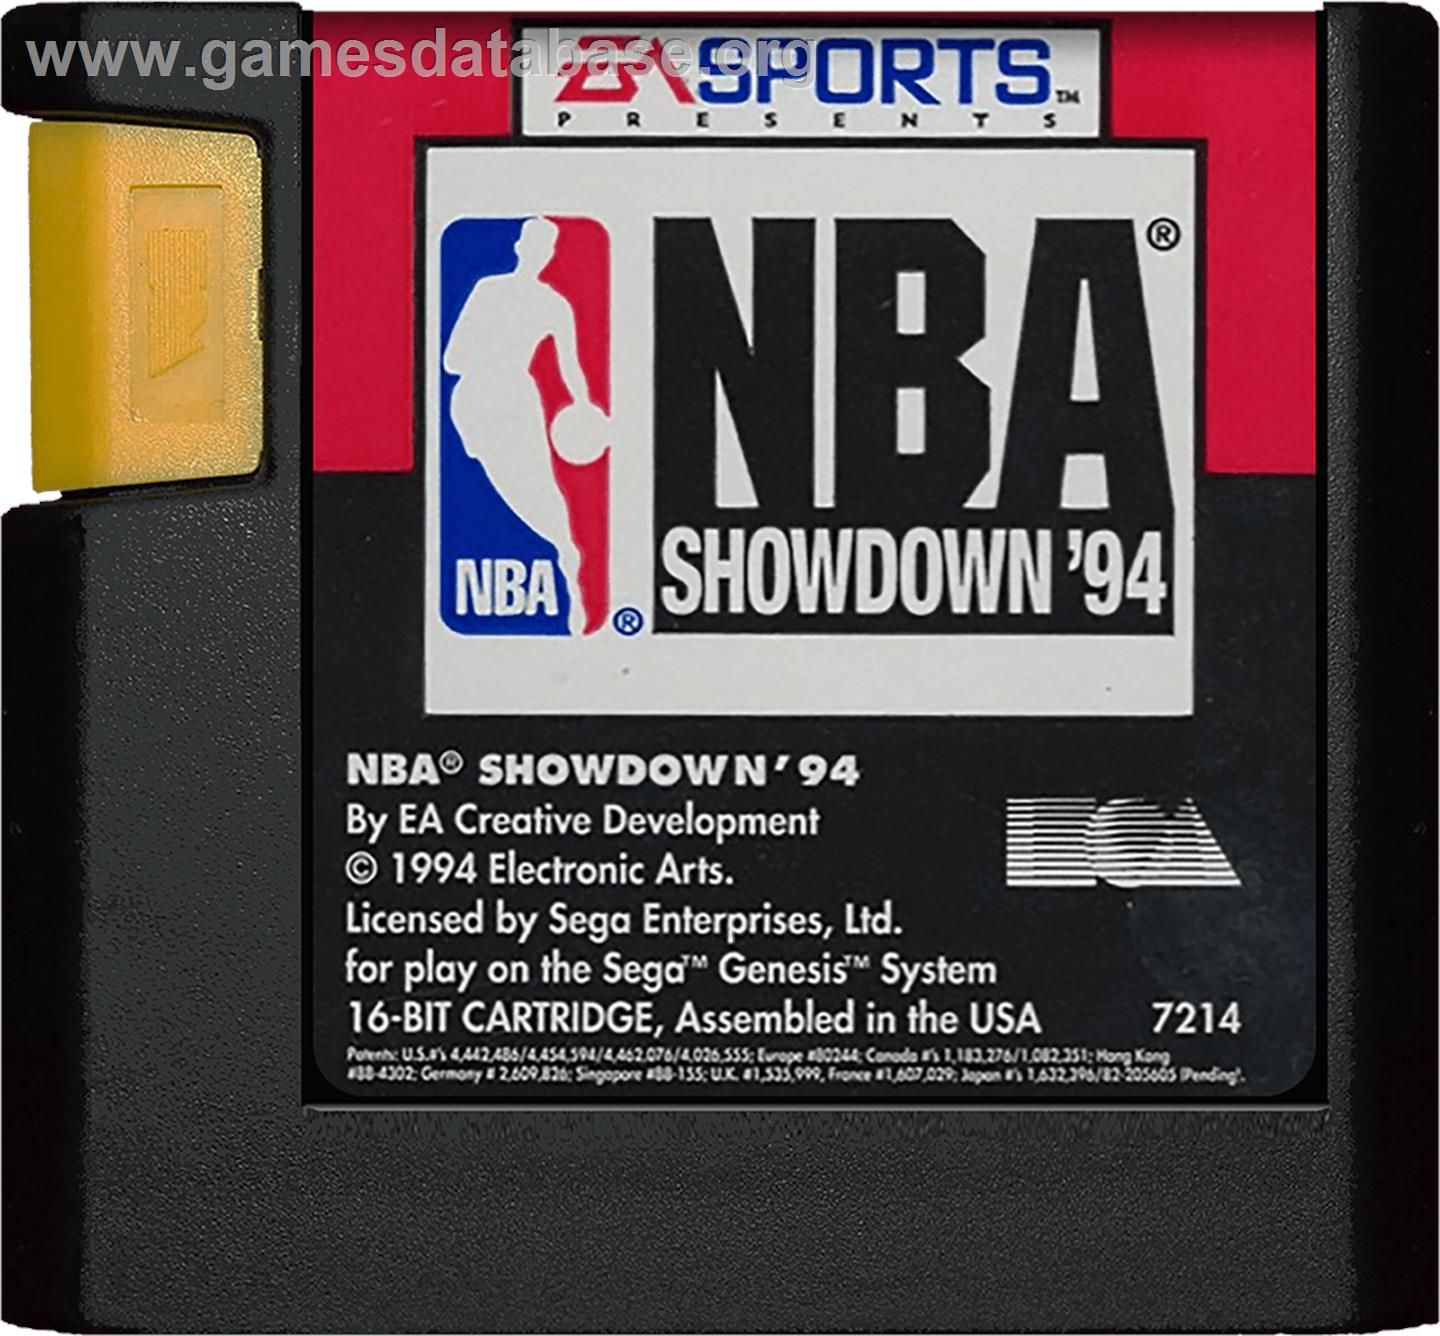 NBA Showdown - Sega Genesis - Artwork - Cartridge